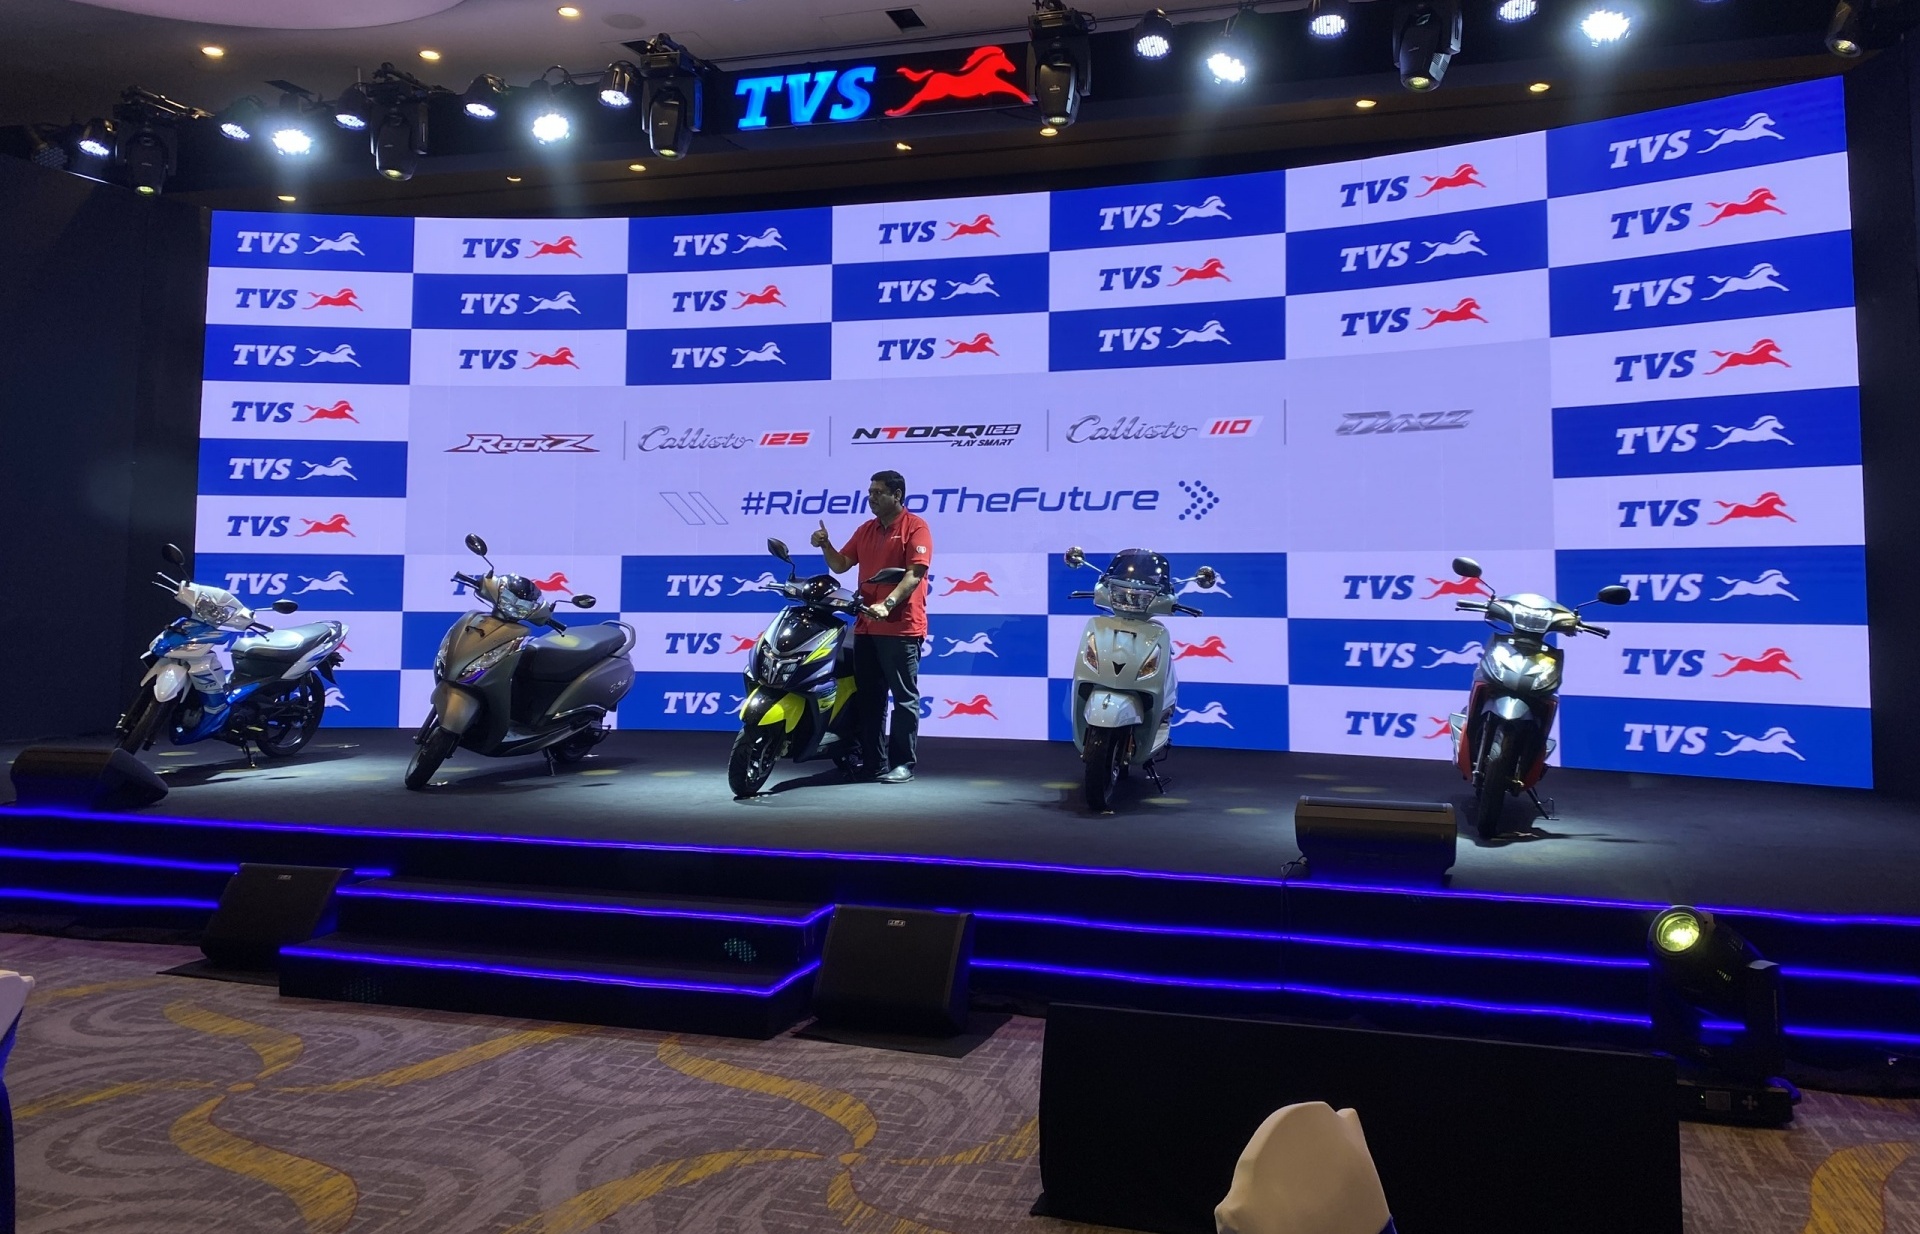 indias tvs motor enters vietnamese motorcycle market